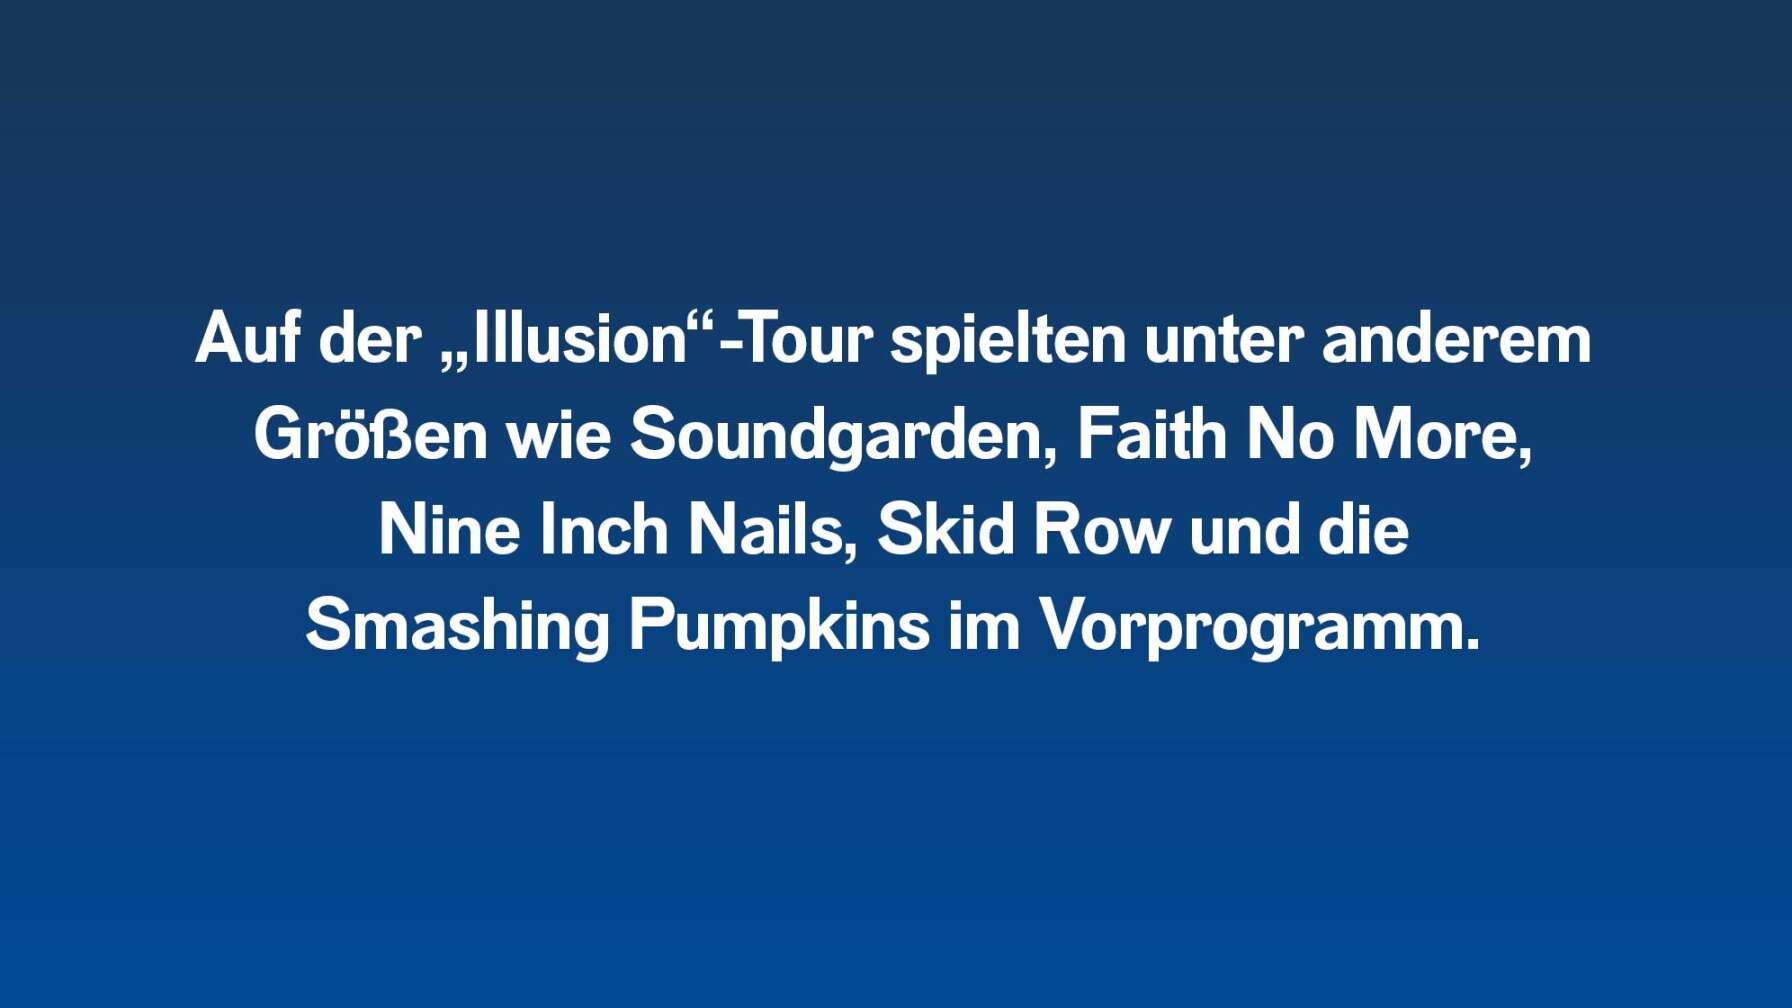 Auf der Illusion-Tour spielten Guns N' Roses unter anderem mit Soundgarden, Skid Row, Faith No More, Nine Inch Nails und die Smashing Pumpkins im Vorprogramm.